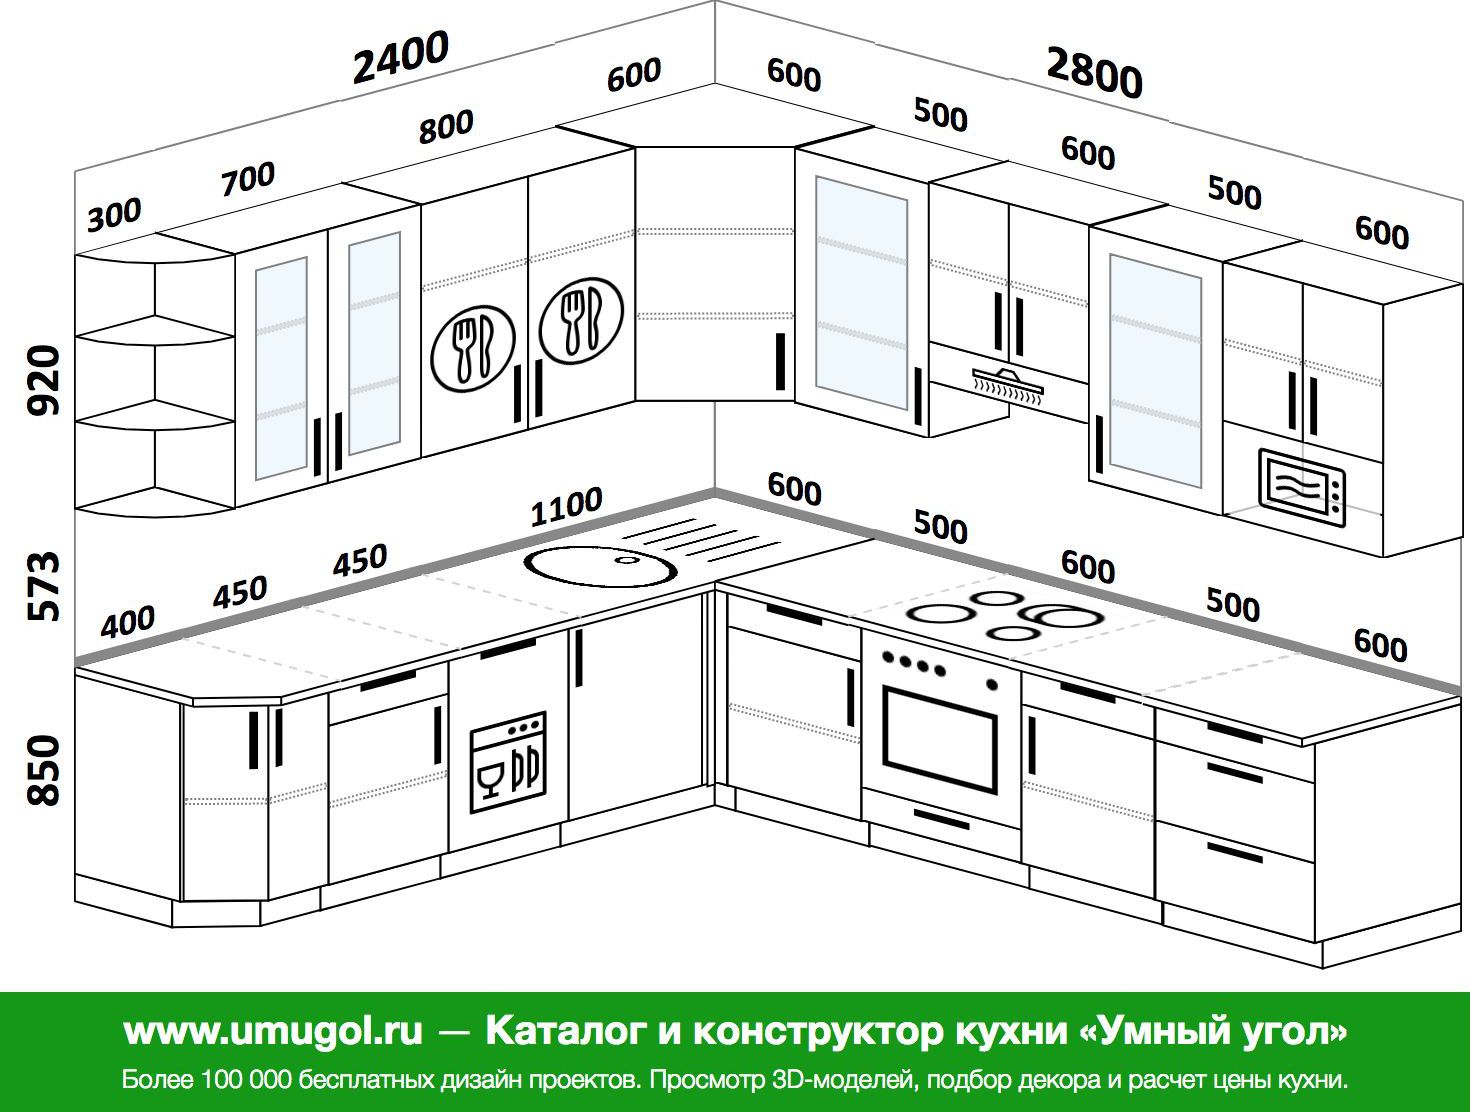 высота мебели на кухне стандарт